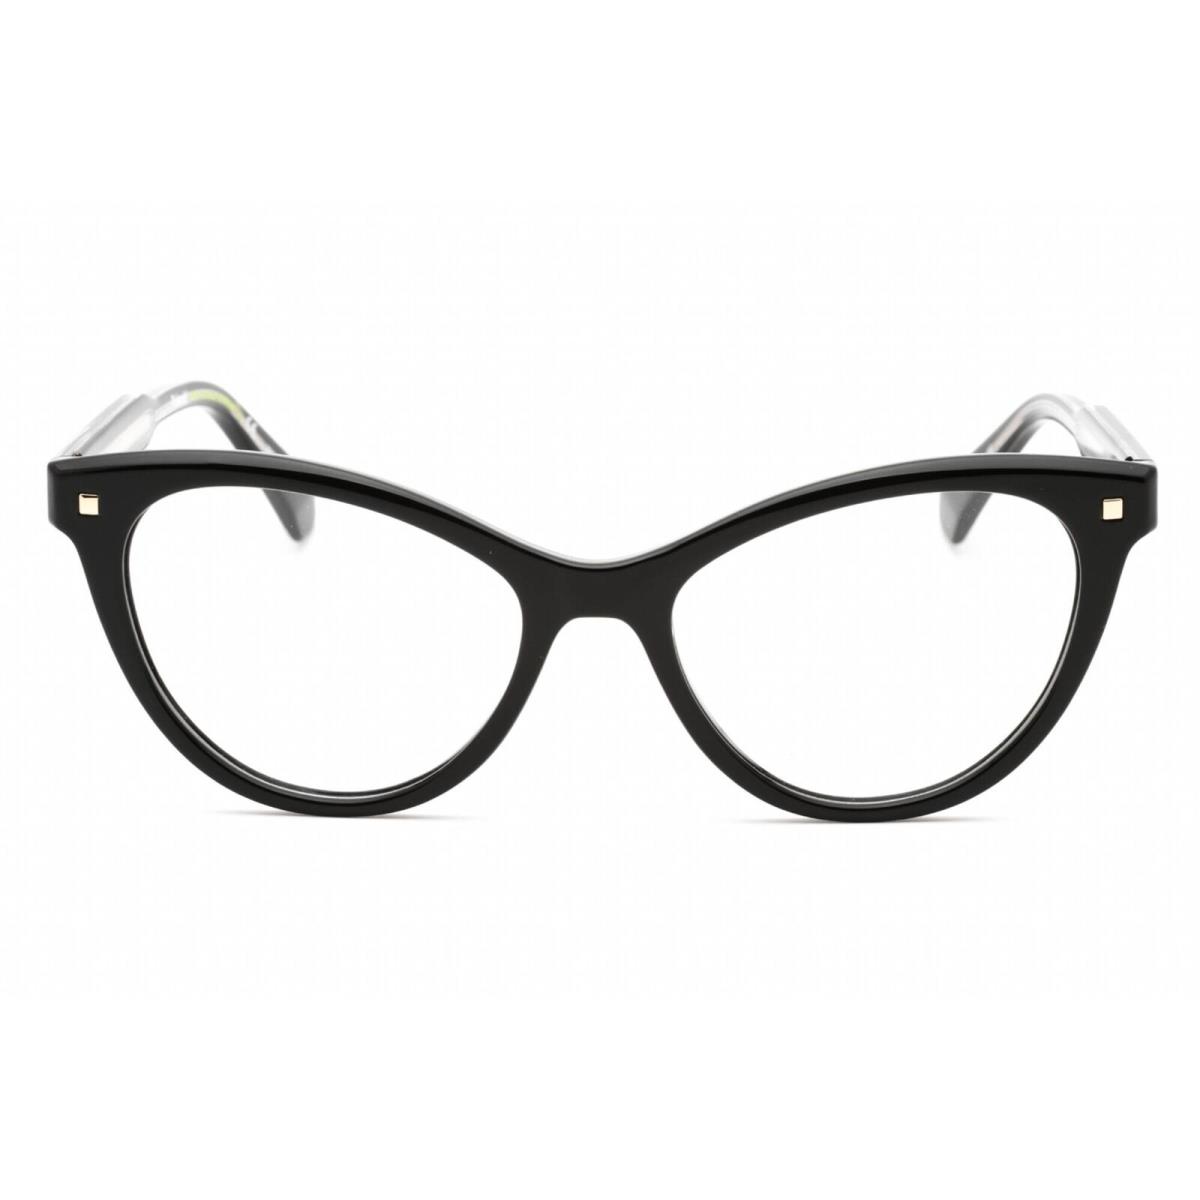 Polaroid Core Women`s Eyeglasses Black Plastic Cat Eye Frame Pld D446 0807 00